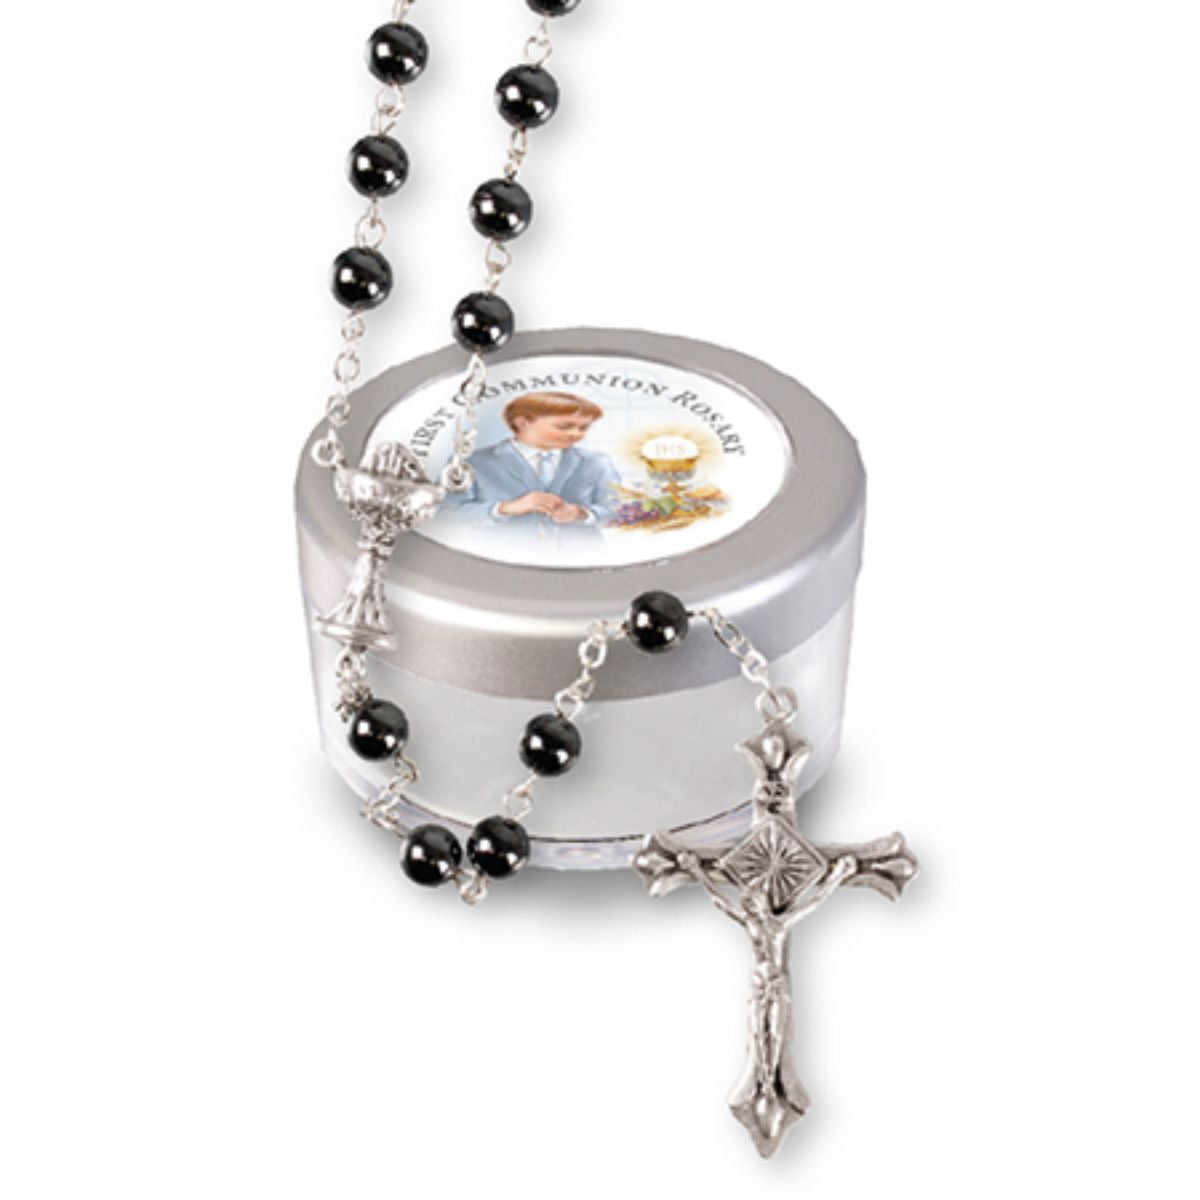 Hematite Rosary Beads